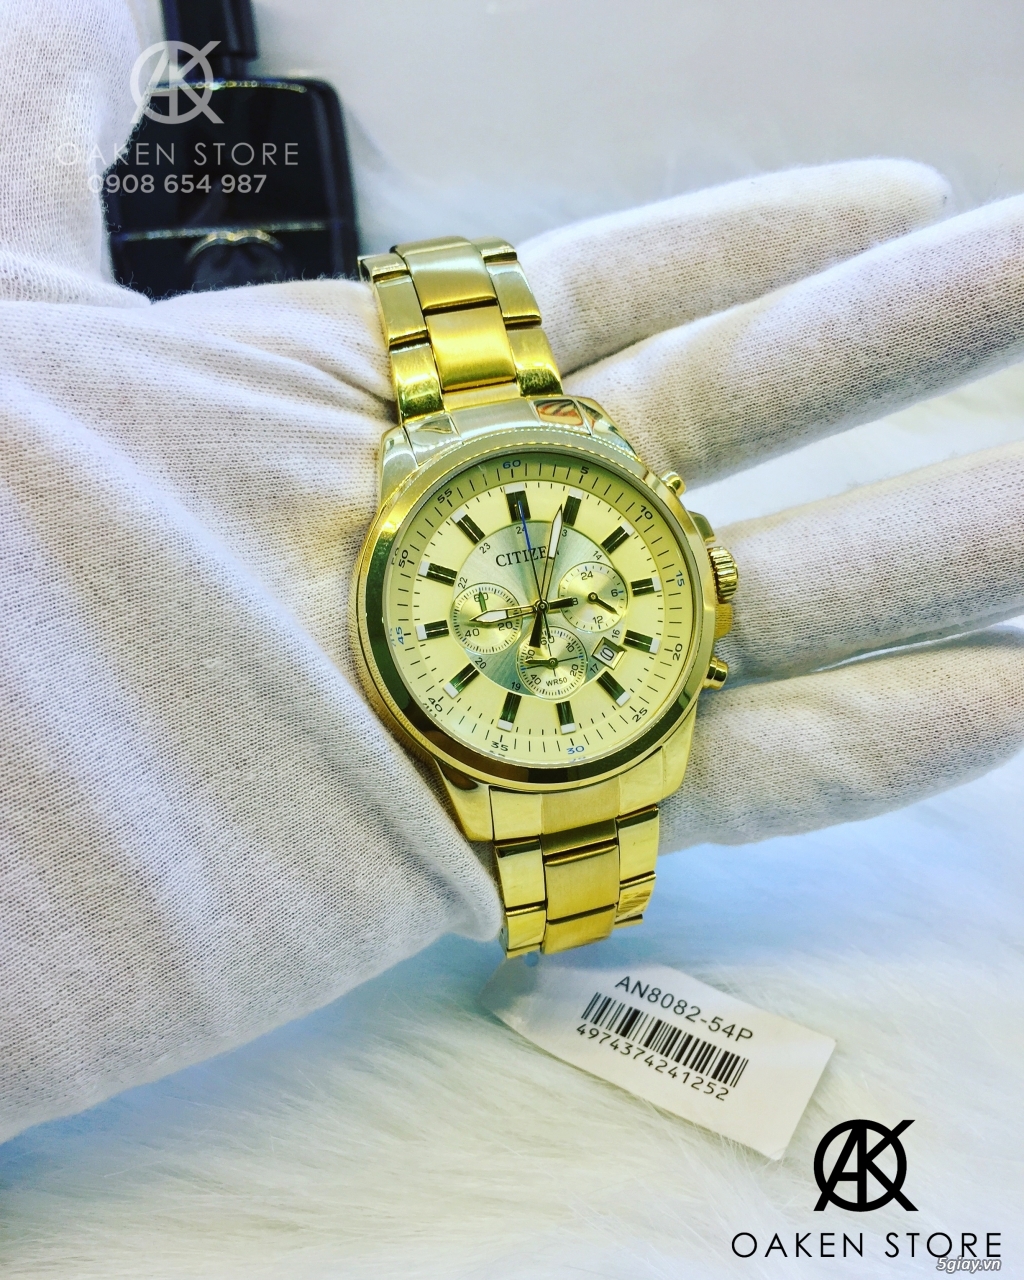 Oaken Store - Đồng hồ chính hãng xách tay giá tốt - 31